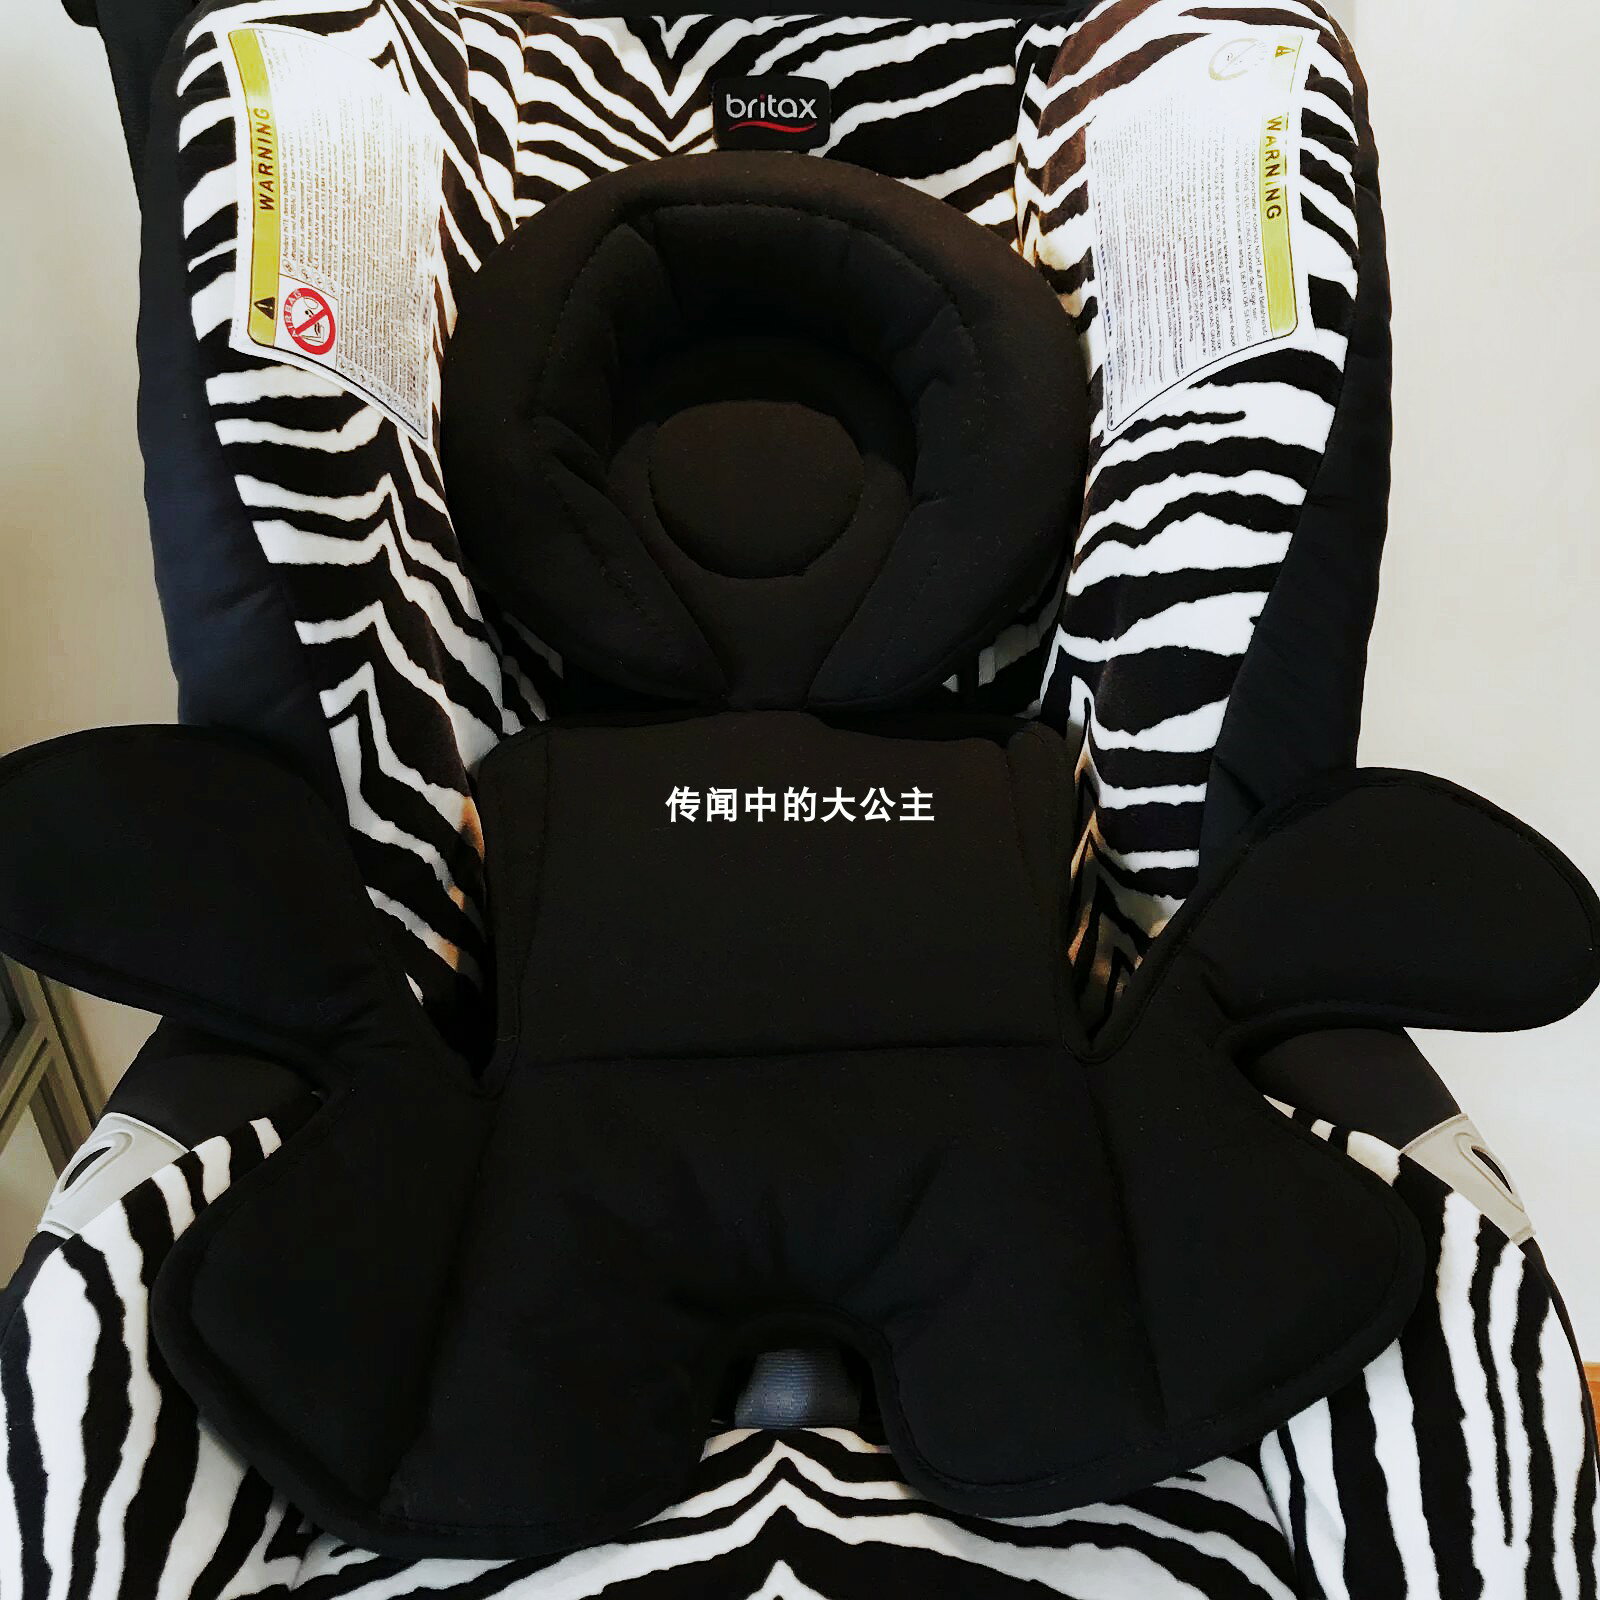 德國britax頭等艙兒童汽車安全座椅新生兒嬰兒墊子腰托配件0-1歲